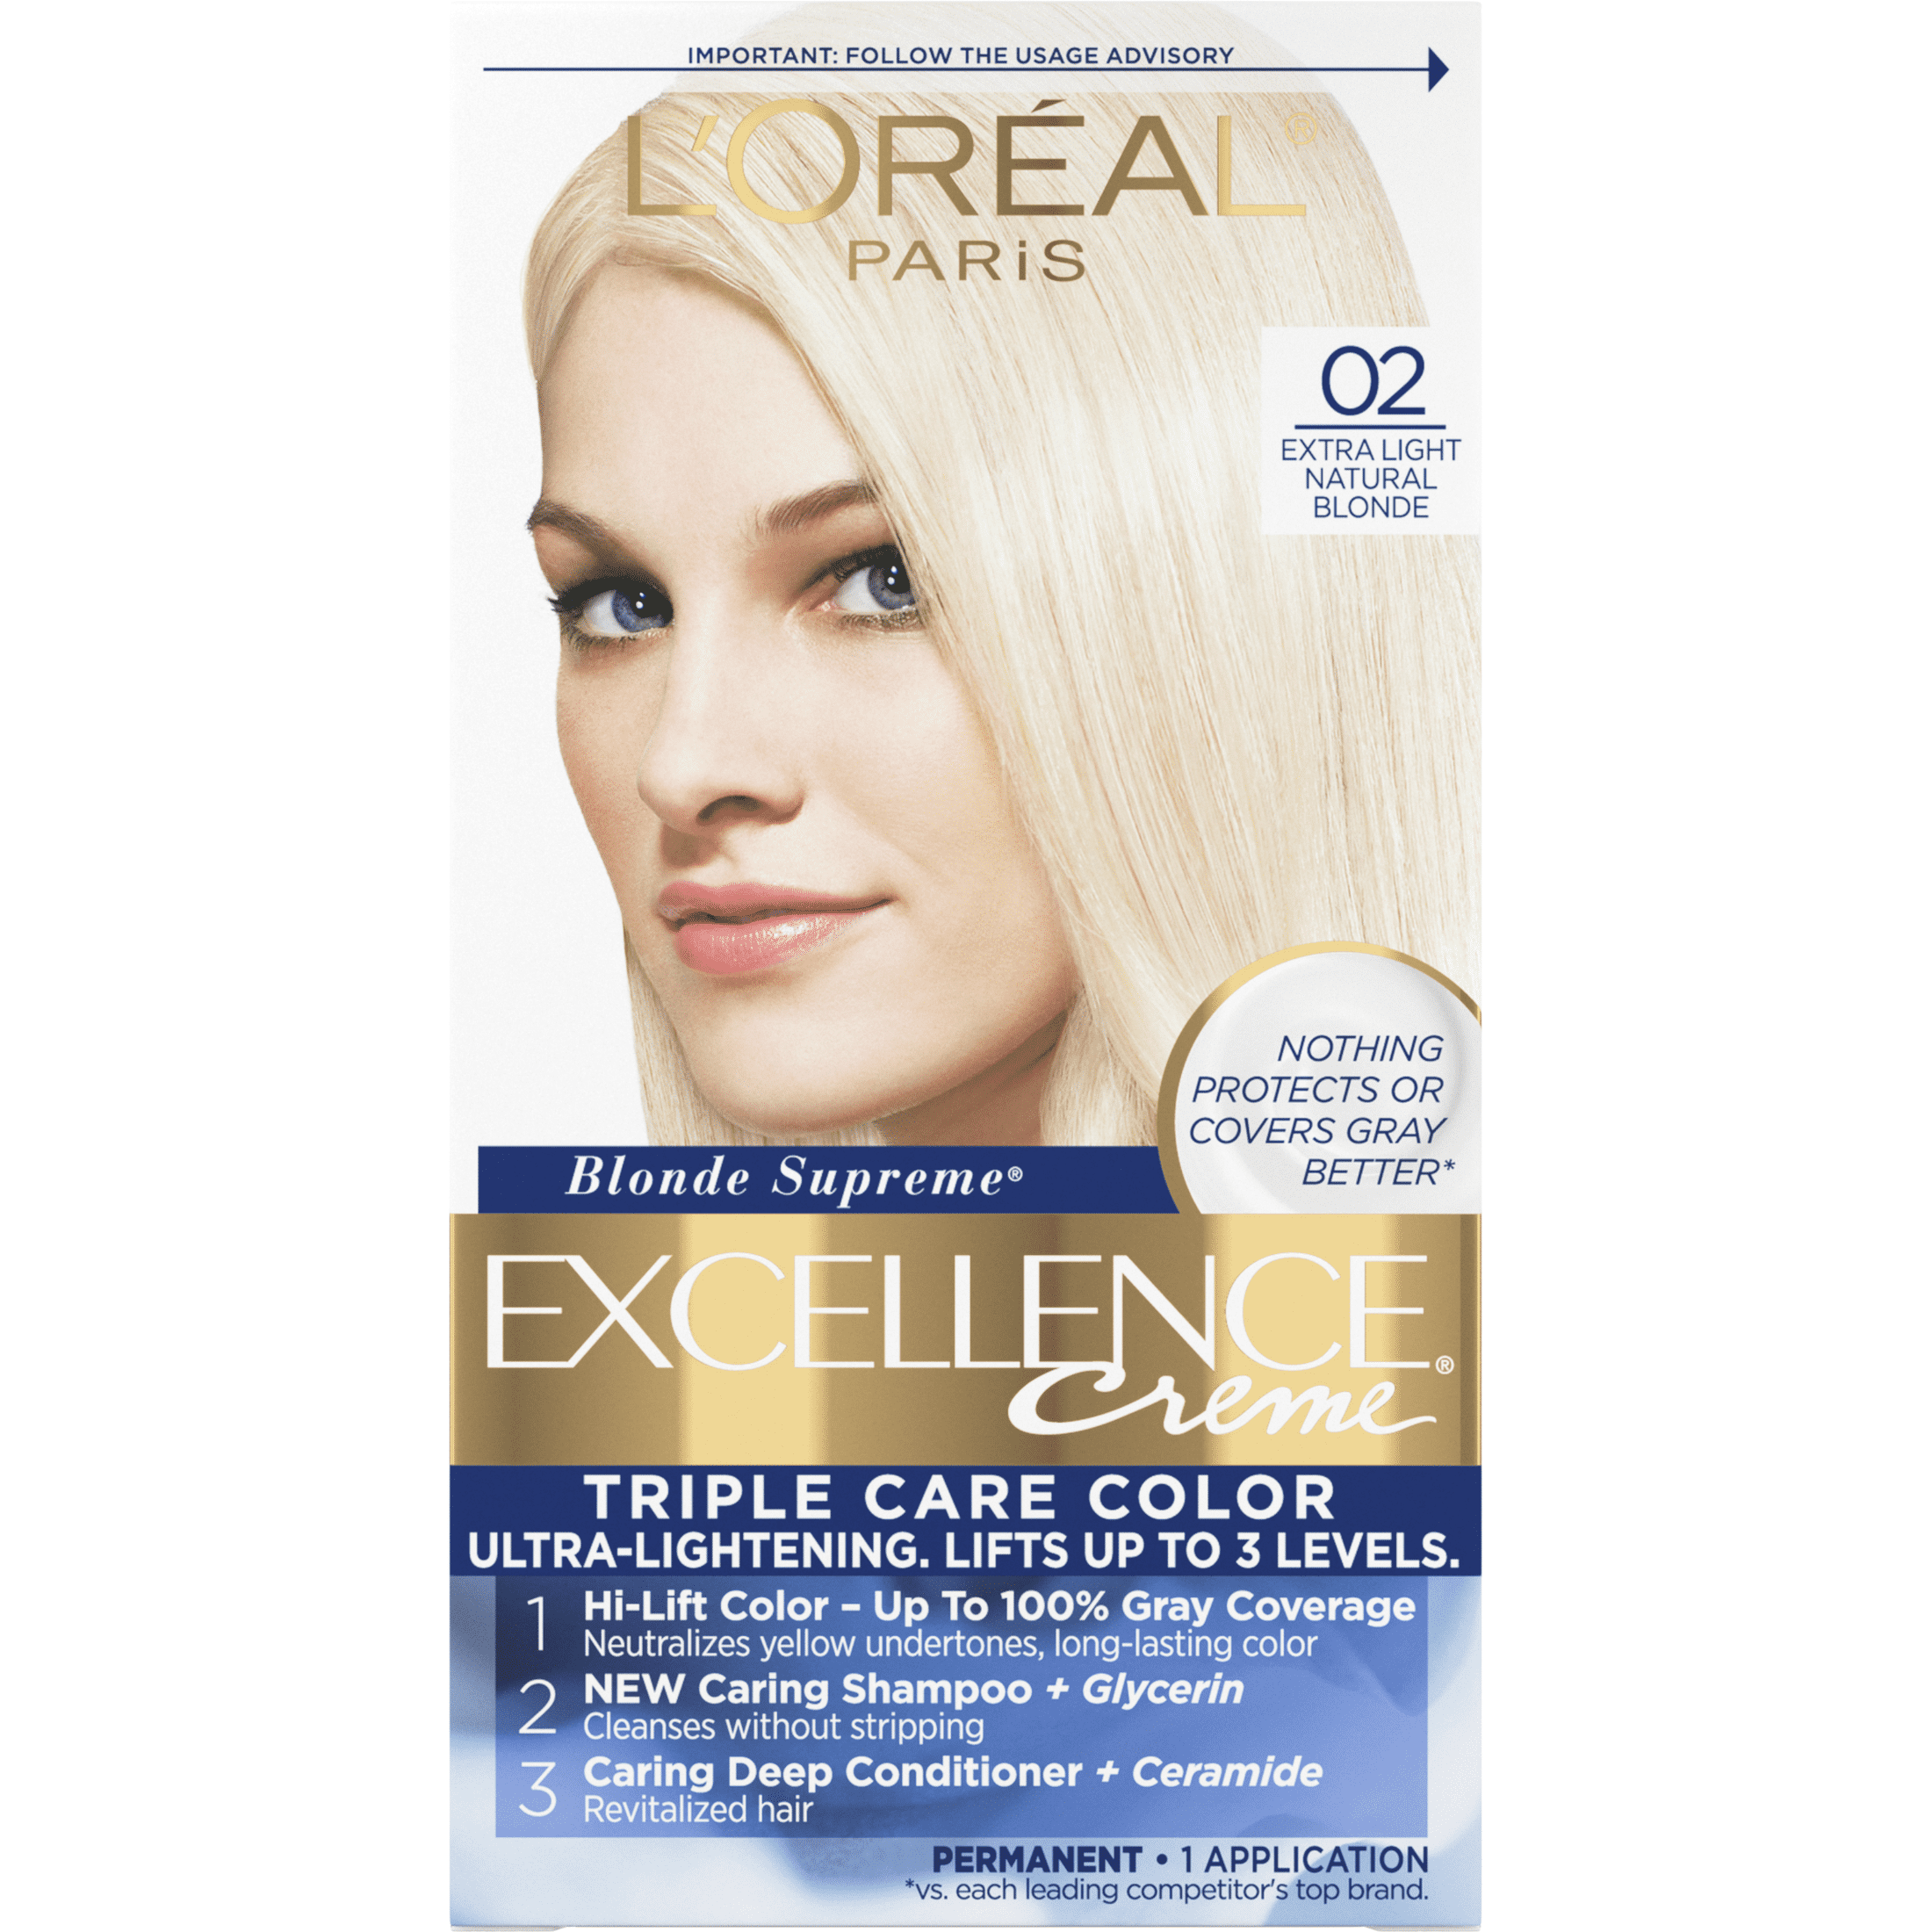 Paris Excellence Creme Permanent Hair Color, 02 Extra Light Blonde Walmart.com